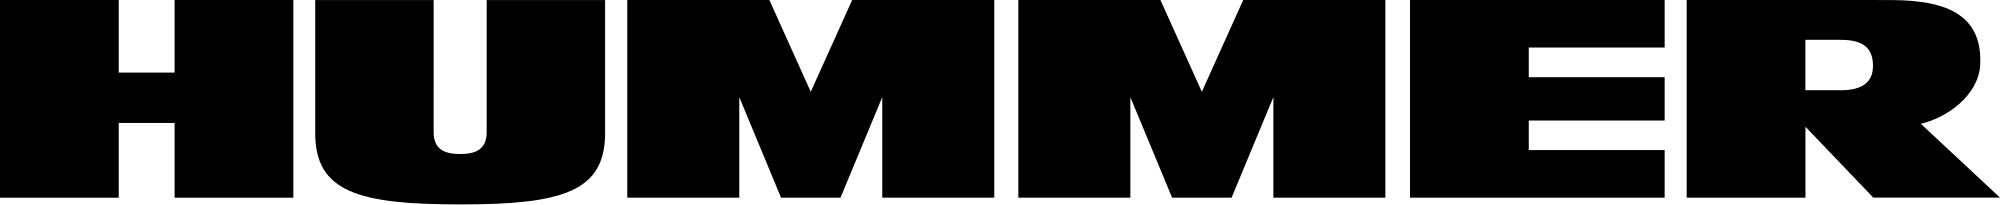 Hummer logo (Present) 2000x205 HD png